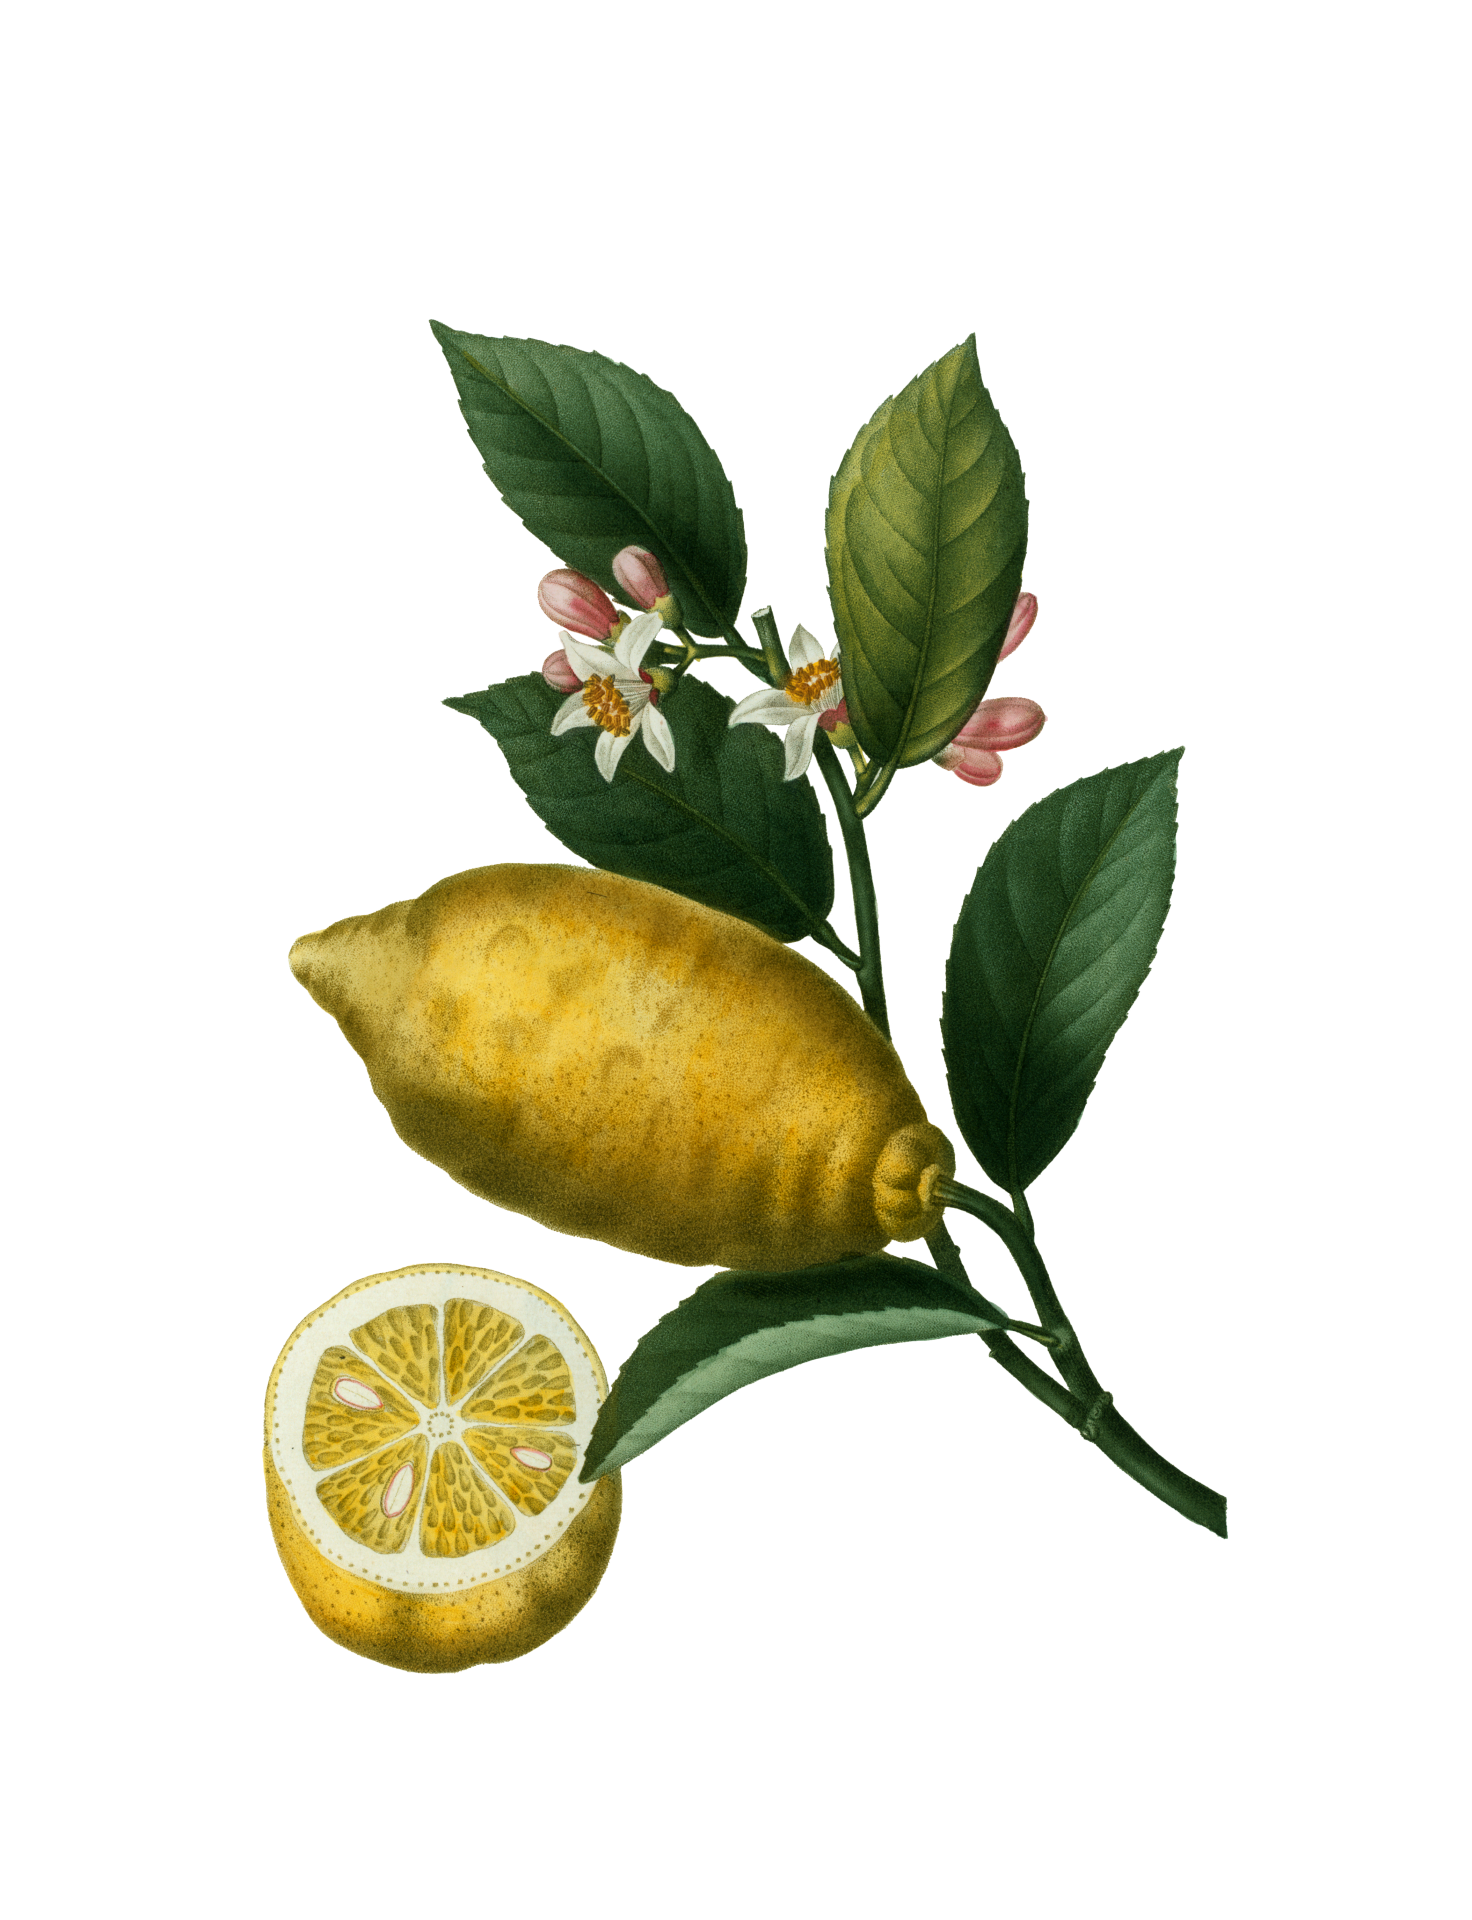 Vintage botanical art illustration of lemons, fruit of the lemon tree clipart on transparent png background